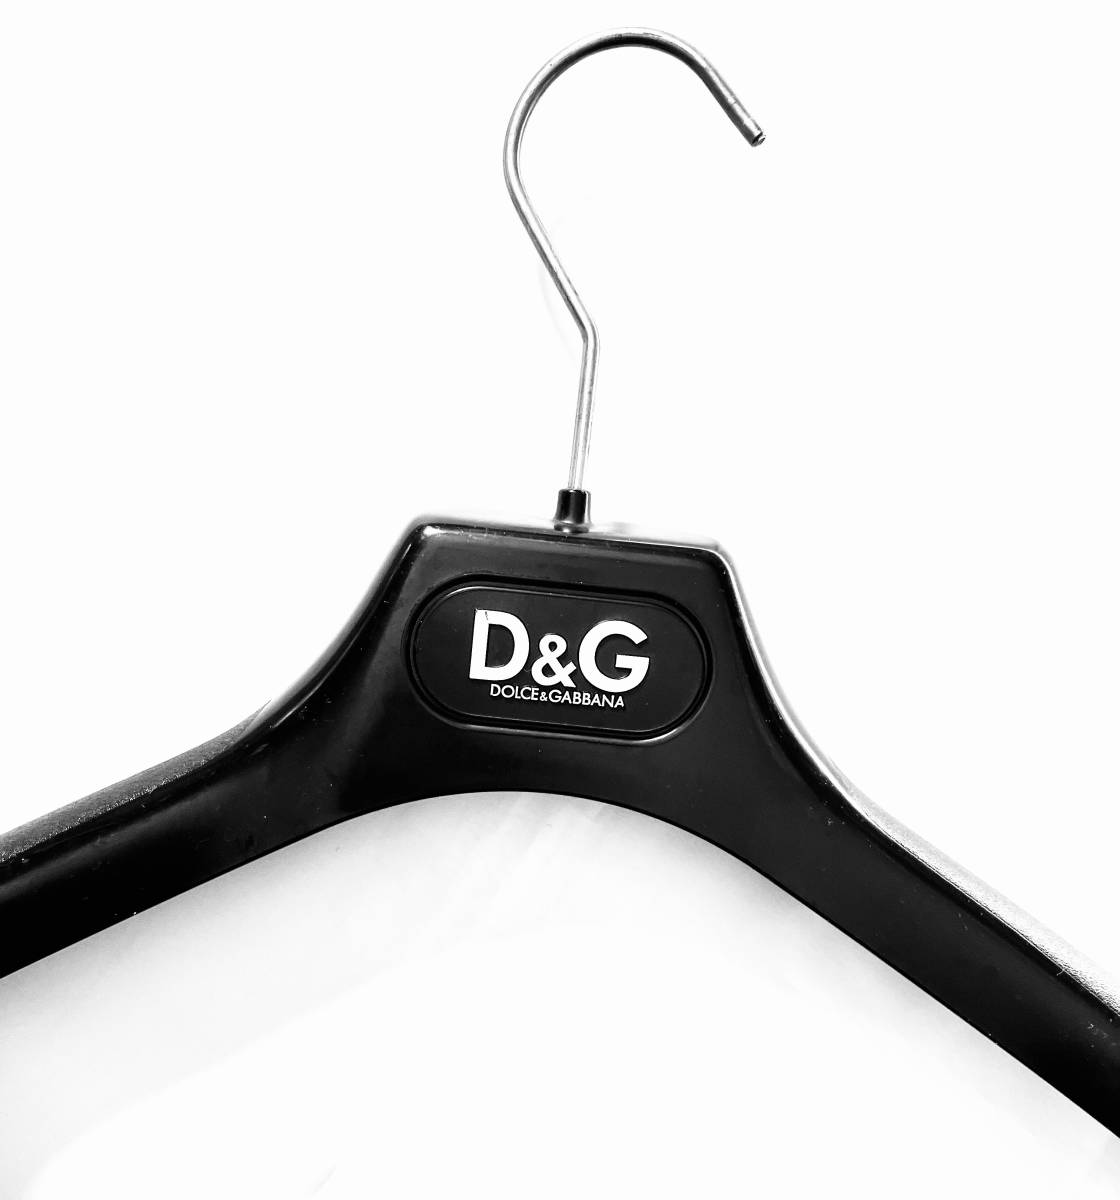 # D&G DOLCE&GABBANA Dolce & Gabbana вешалка 